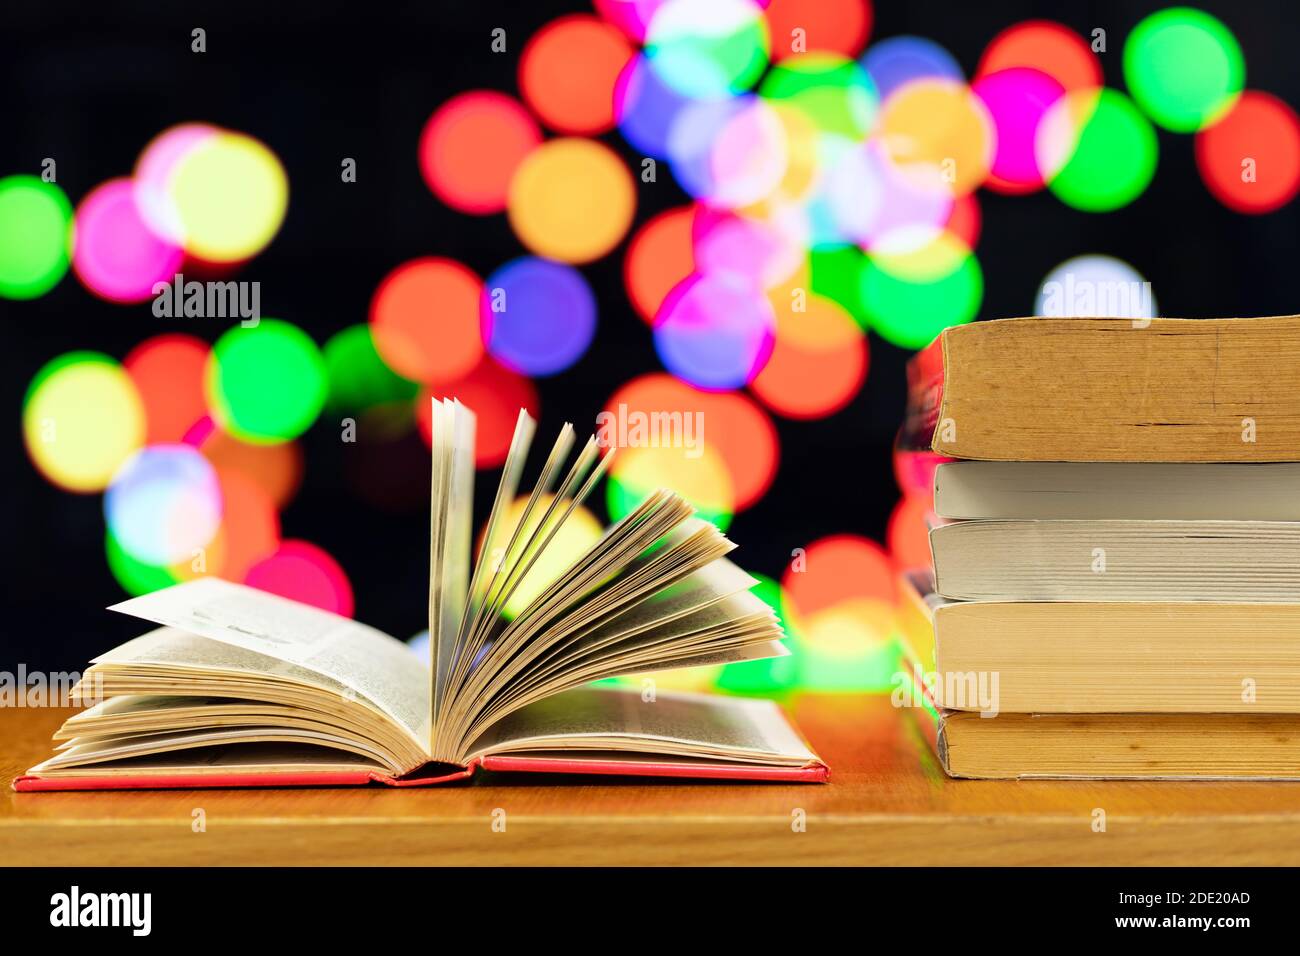 Một đống sách và cuốn sách mở với màu nền mờ nhạt làm nền sẽ mang đến cho bạn cảm giác ấm áp, yên bình khi đọc sách vào buổi tối. Cùng khám phá hình ảnh này để tìm thêm động lực đọc sách nhé. 